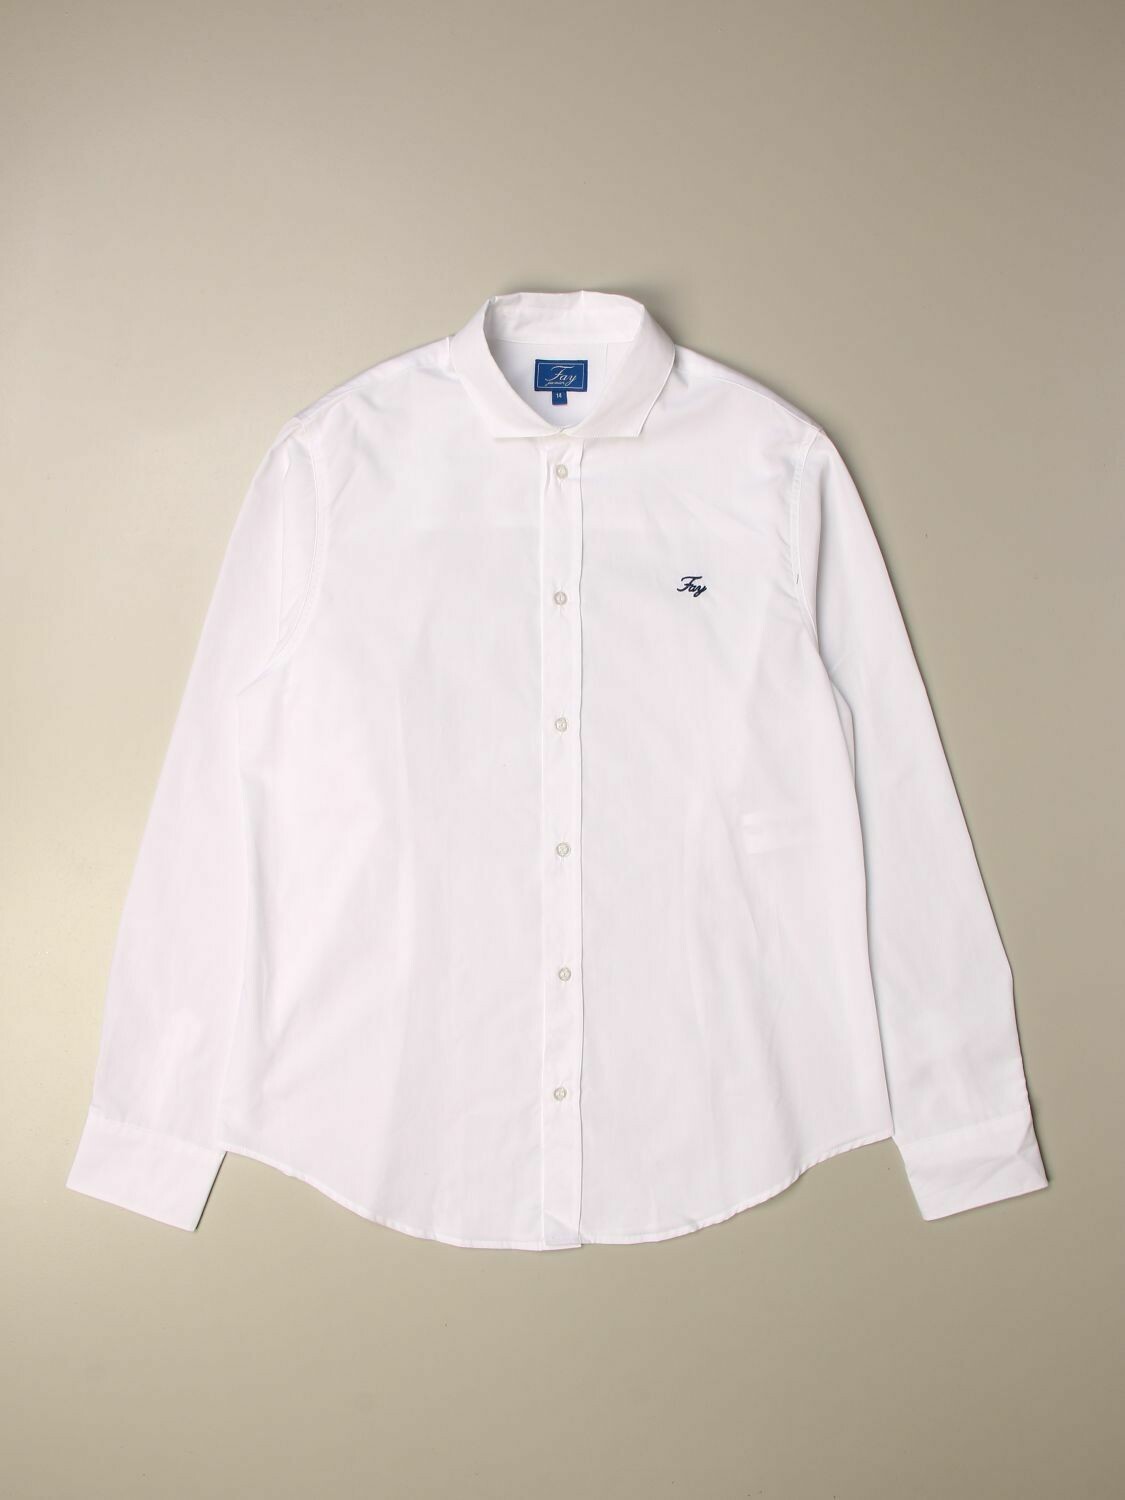 Fay - Camicia bianca con logo ricamato, size: 4 anni